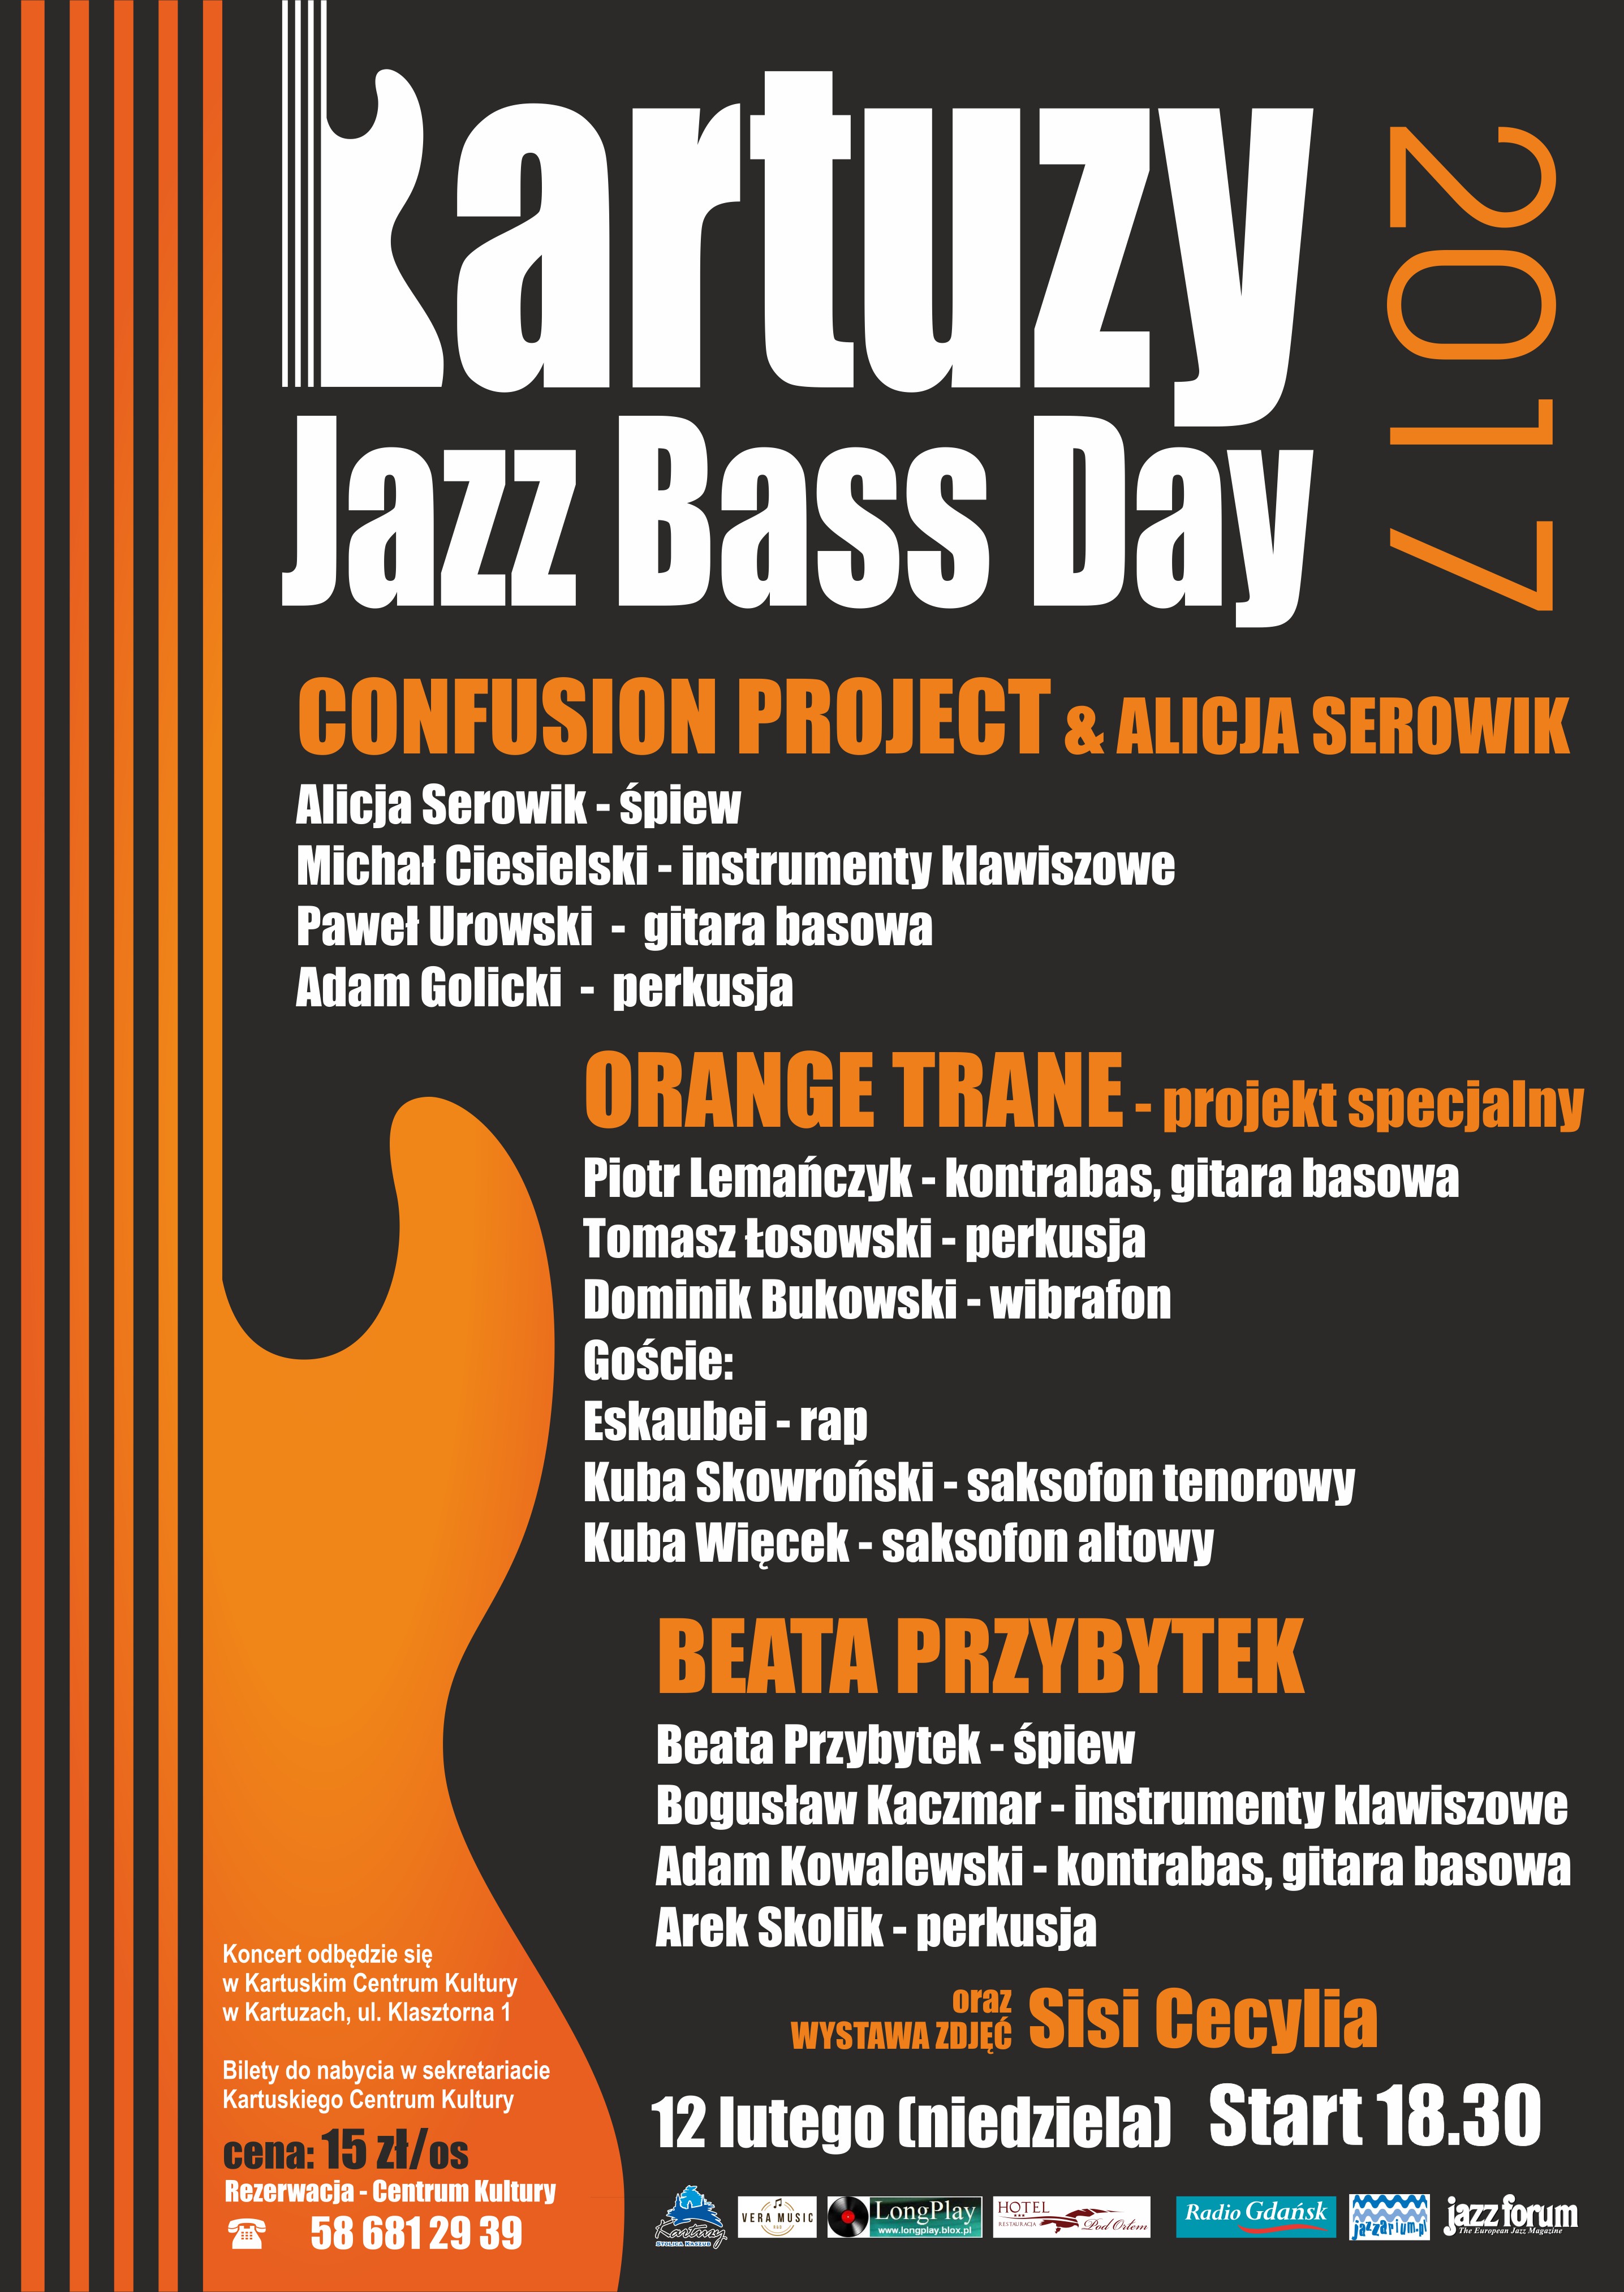 Kartuzy Jazz Bass Day